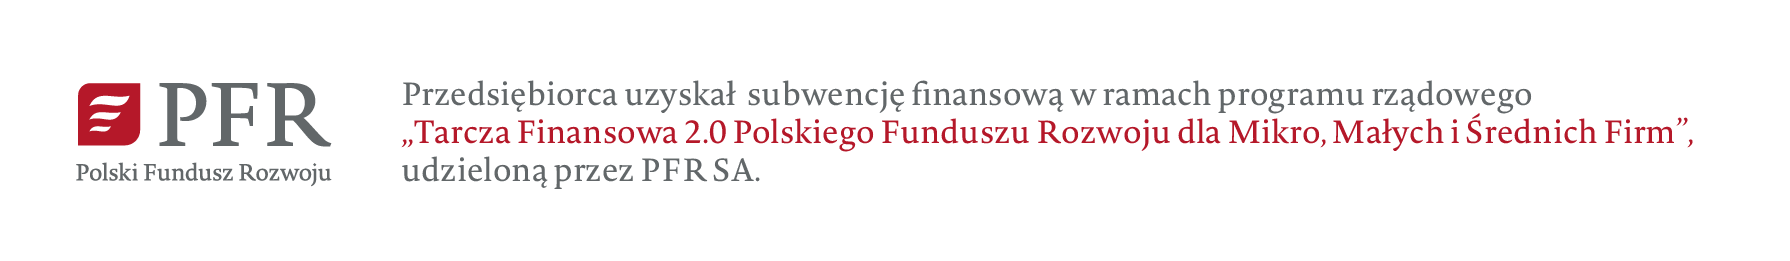 Polski Fundusz Rozwoju PFR S.A.